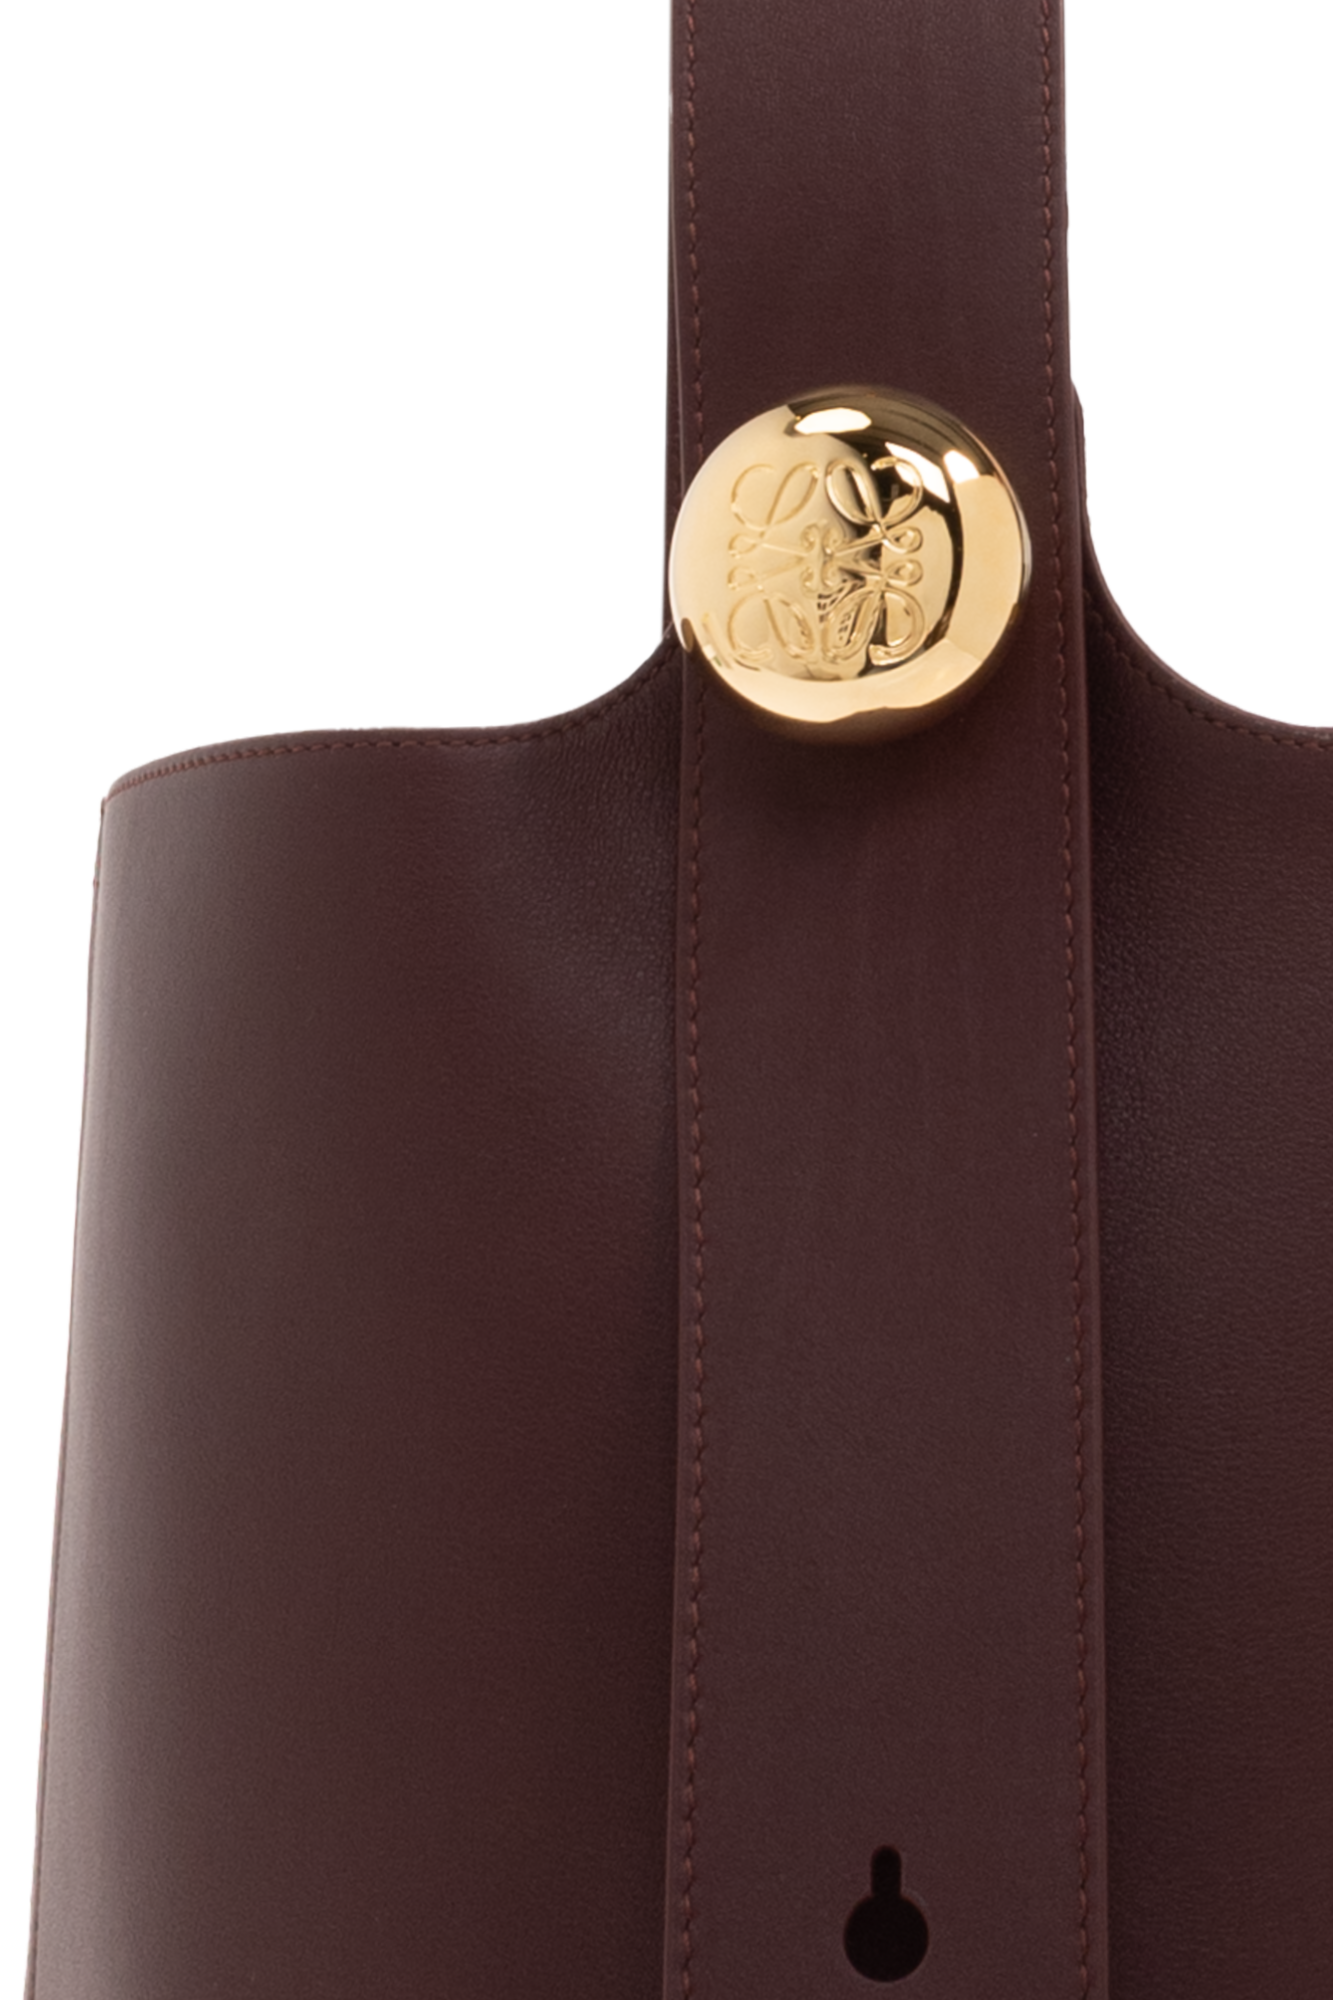 Loewe ‘Medium Pebble’ shoulder bag